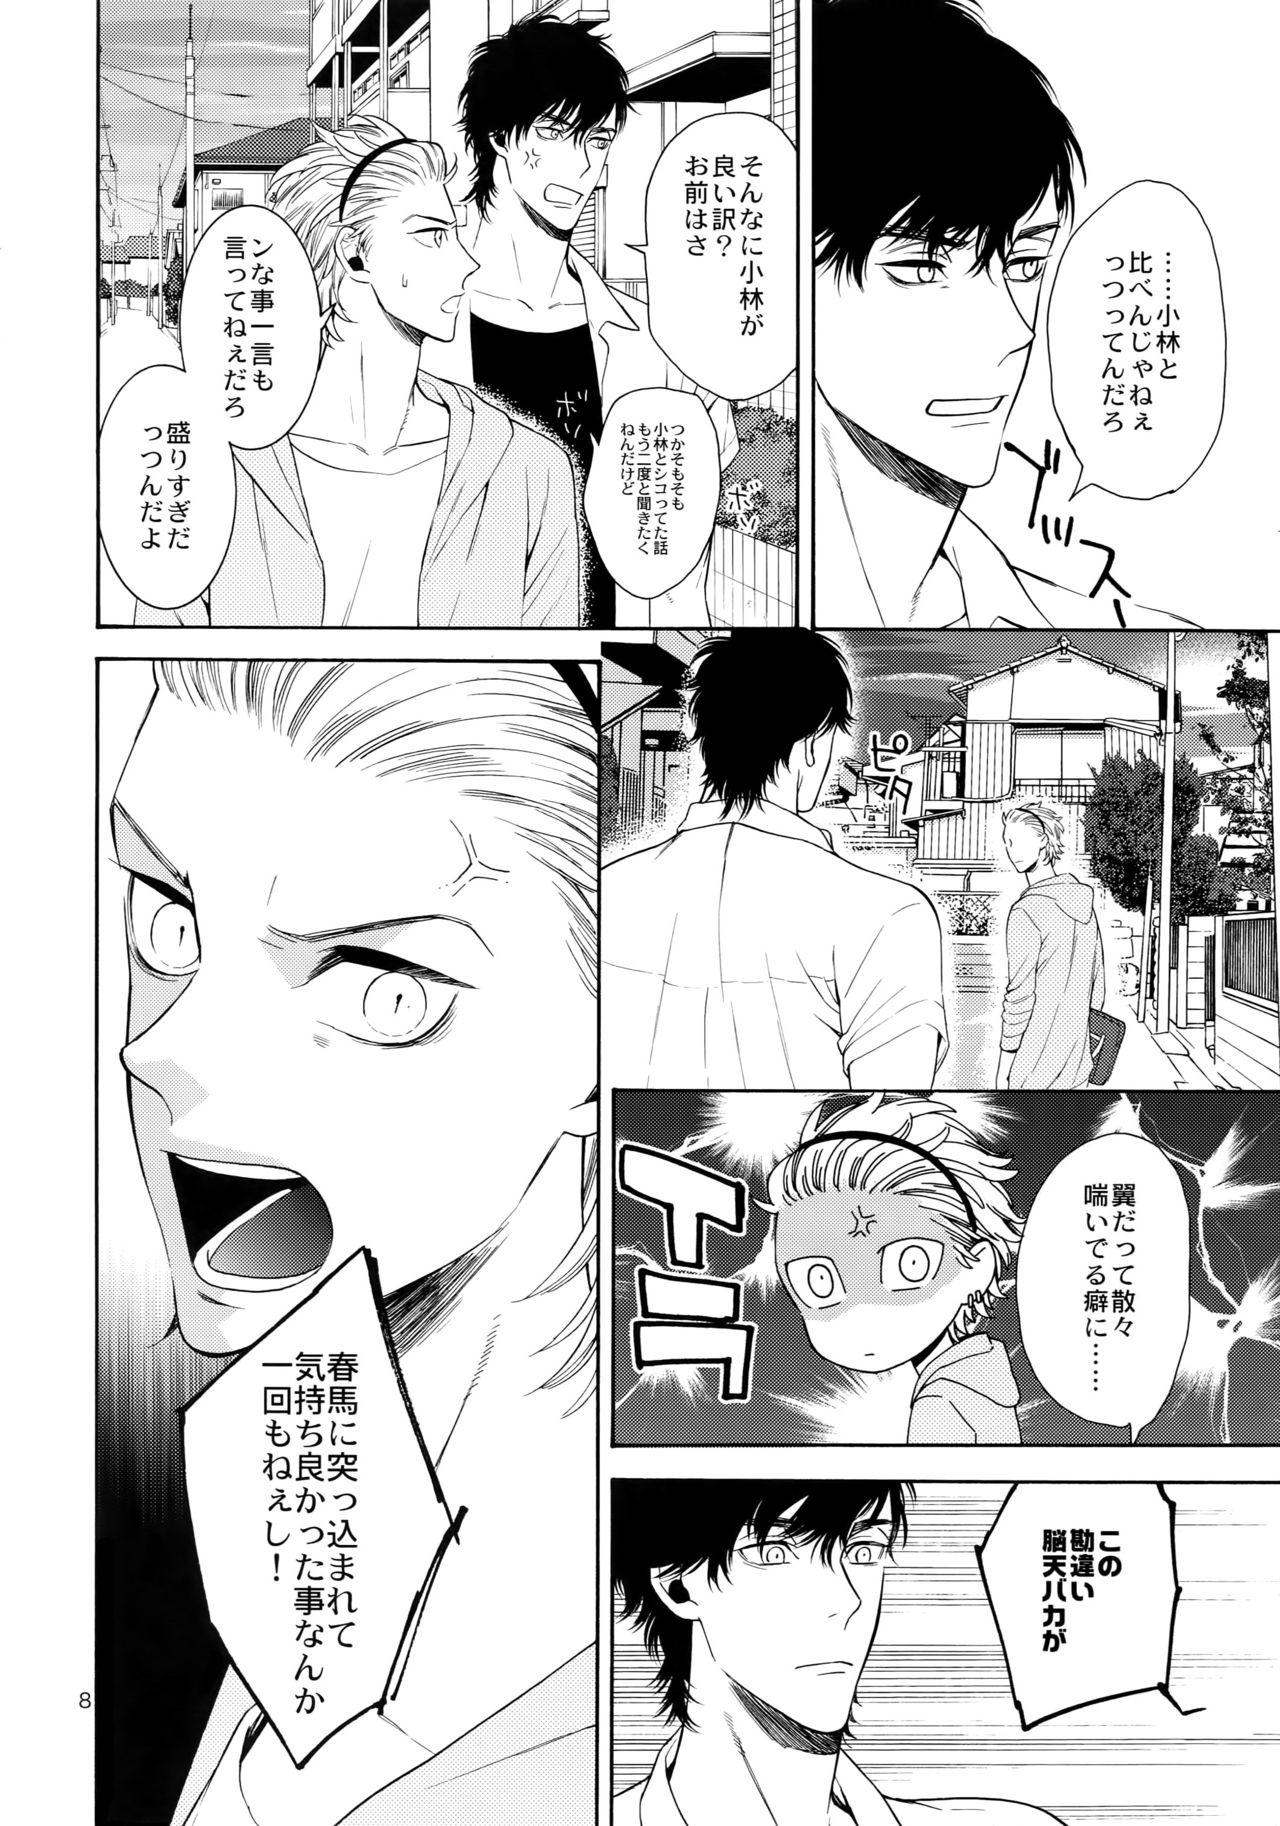 Arabe Uruwashi no Vinca Major Koborebanashi Young Old - Page 7